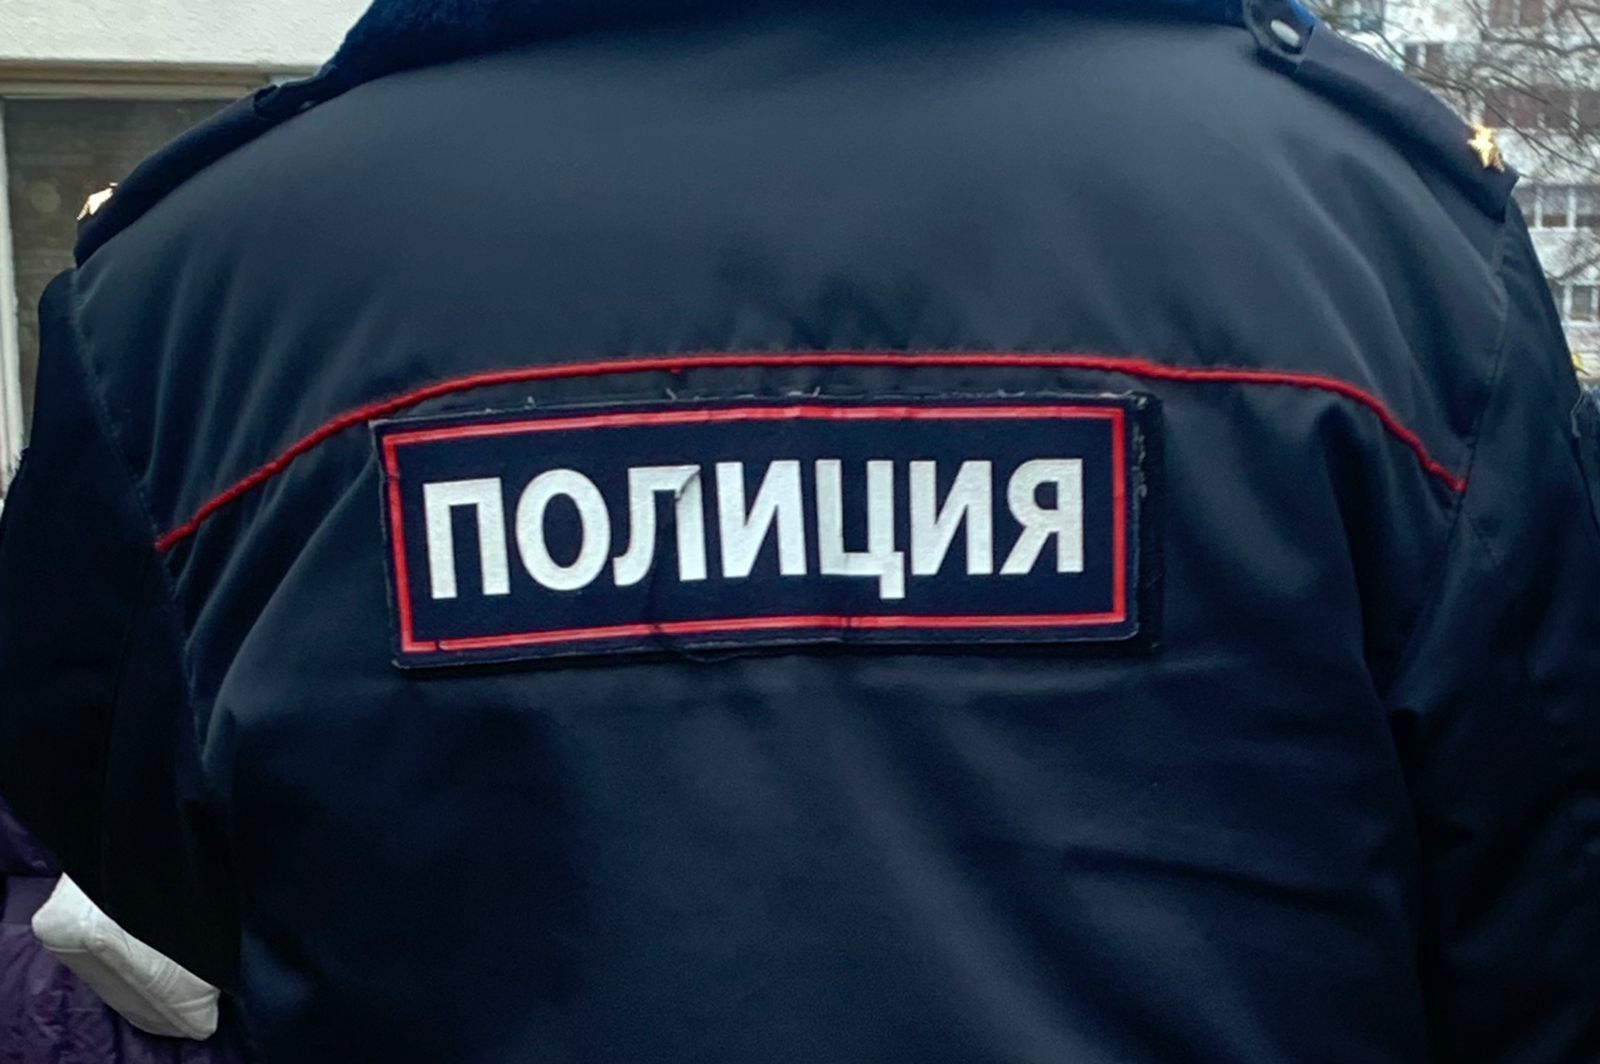 В РТ бухгалтера обвиняют в присвоении более 1 млн рублей